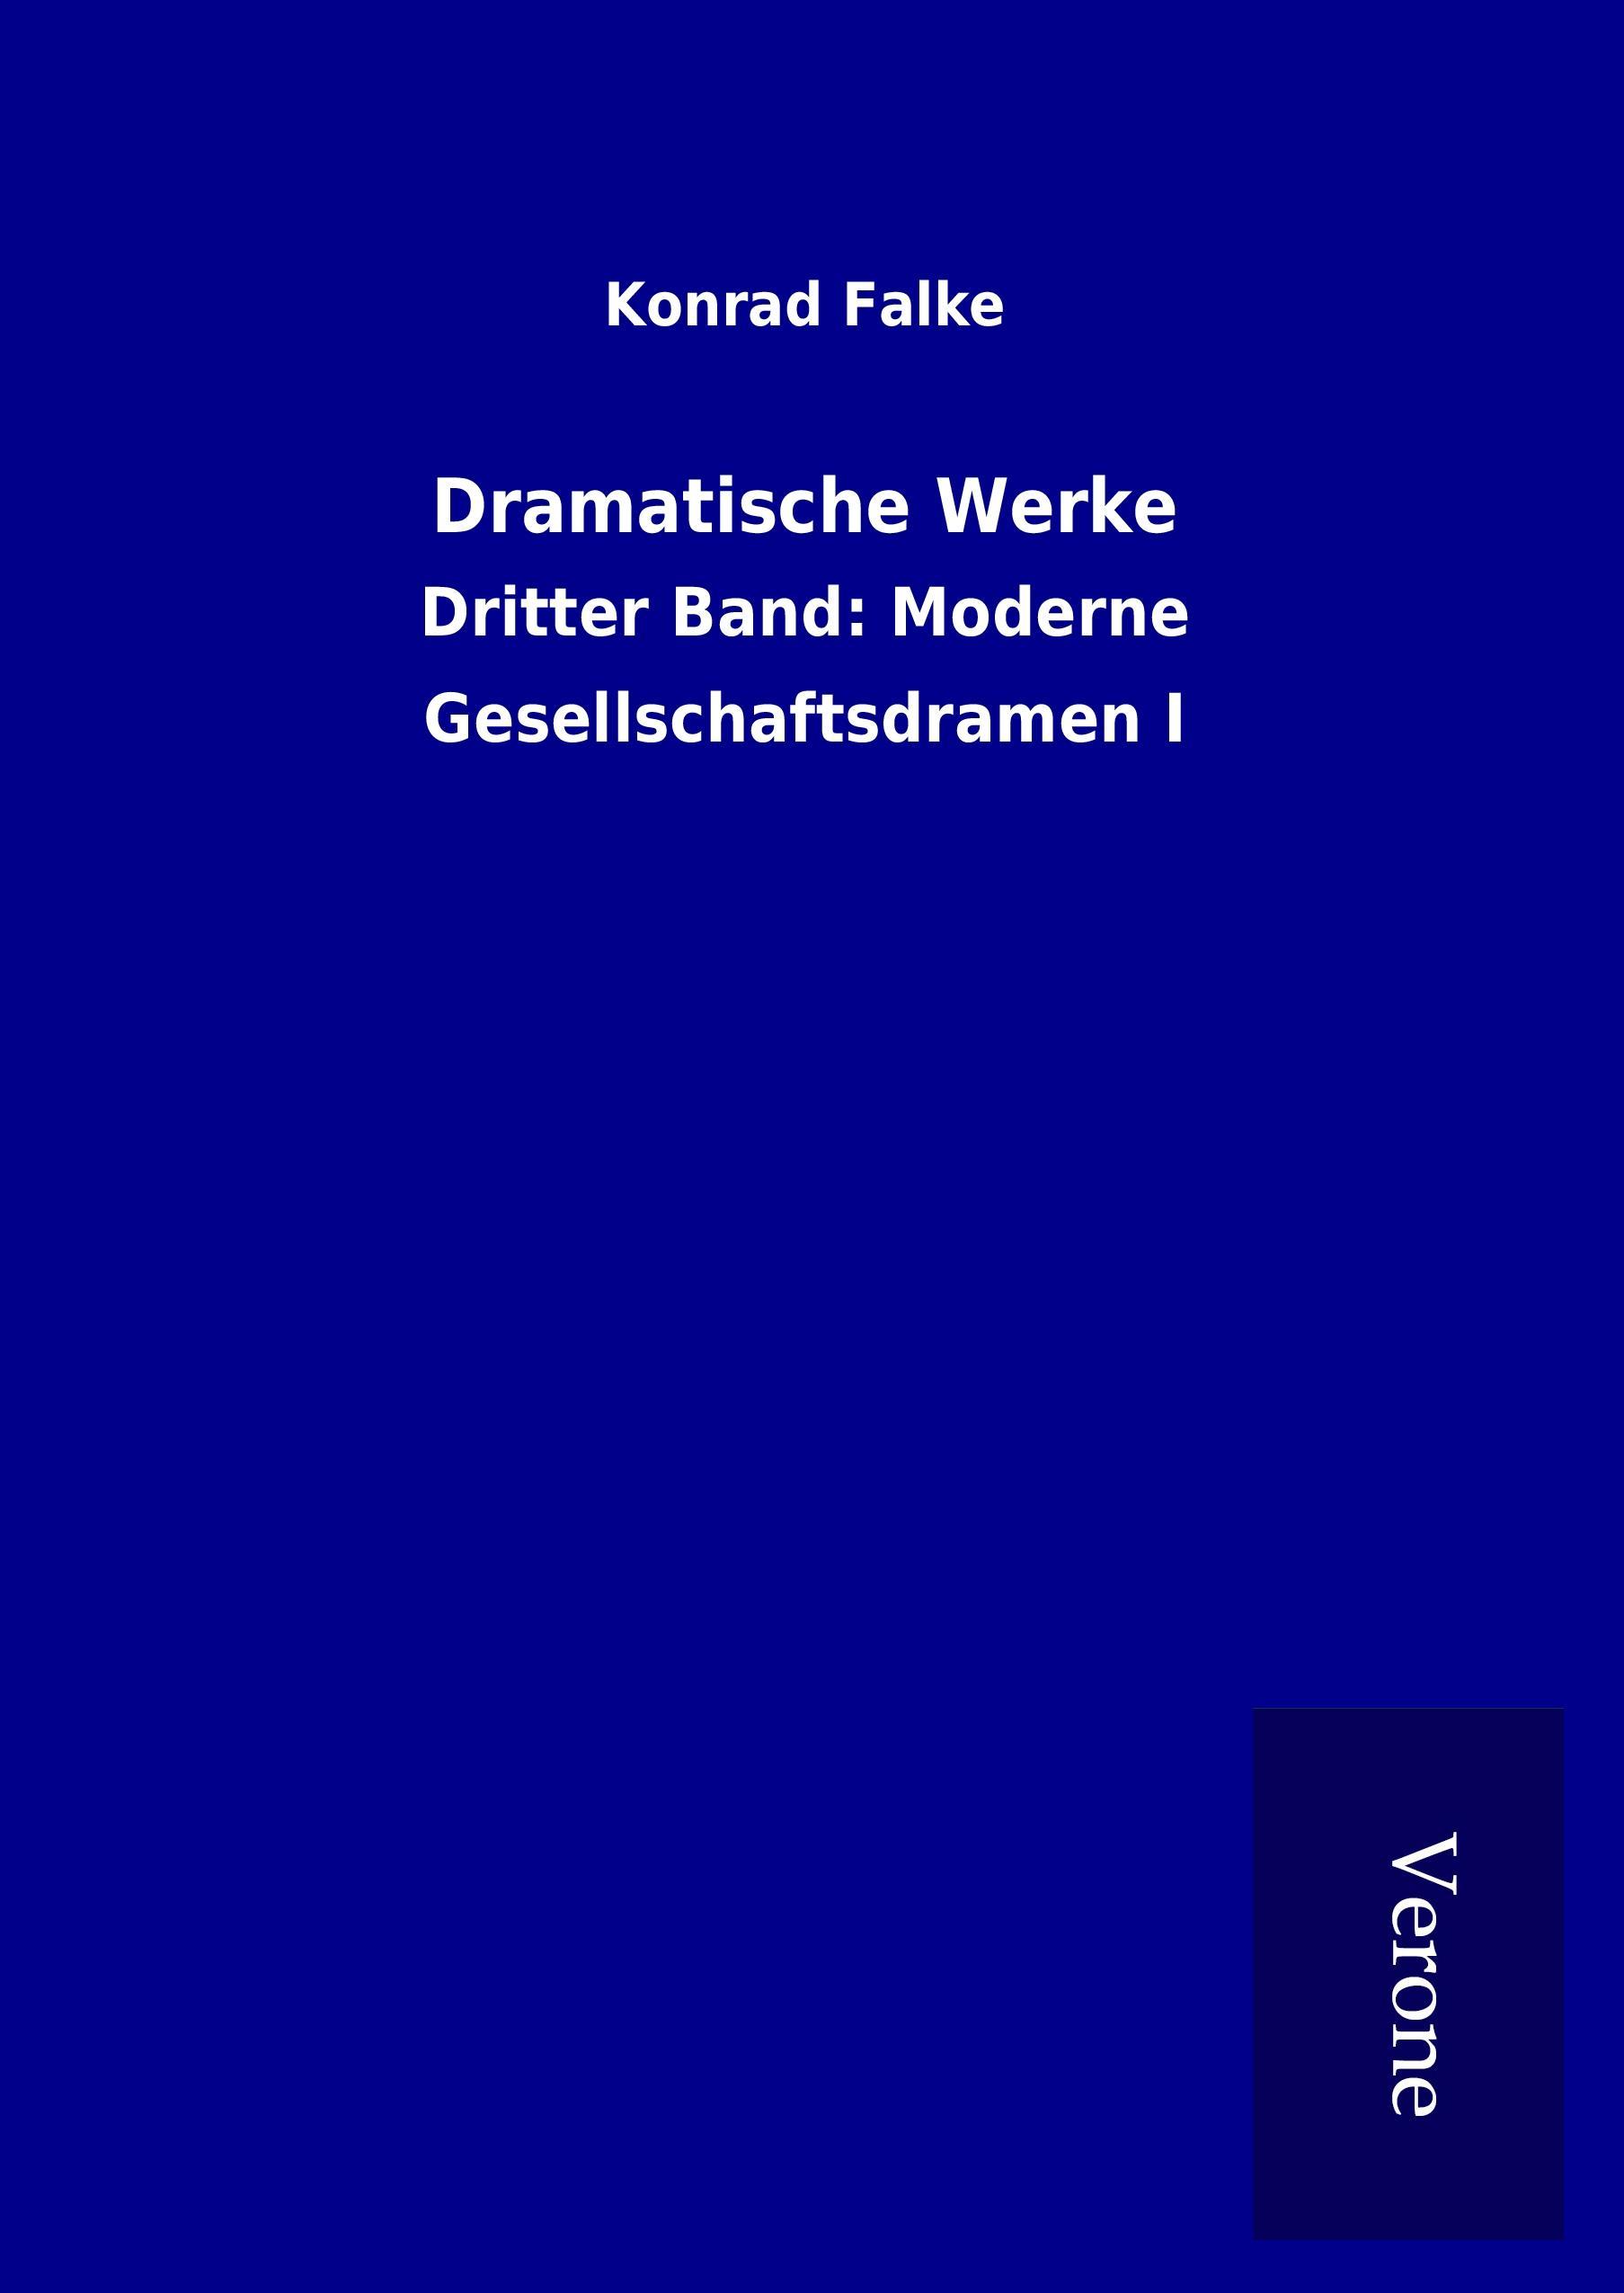 Dramatische Werke - Falke, Konrad